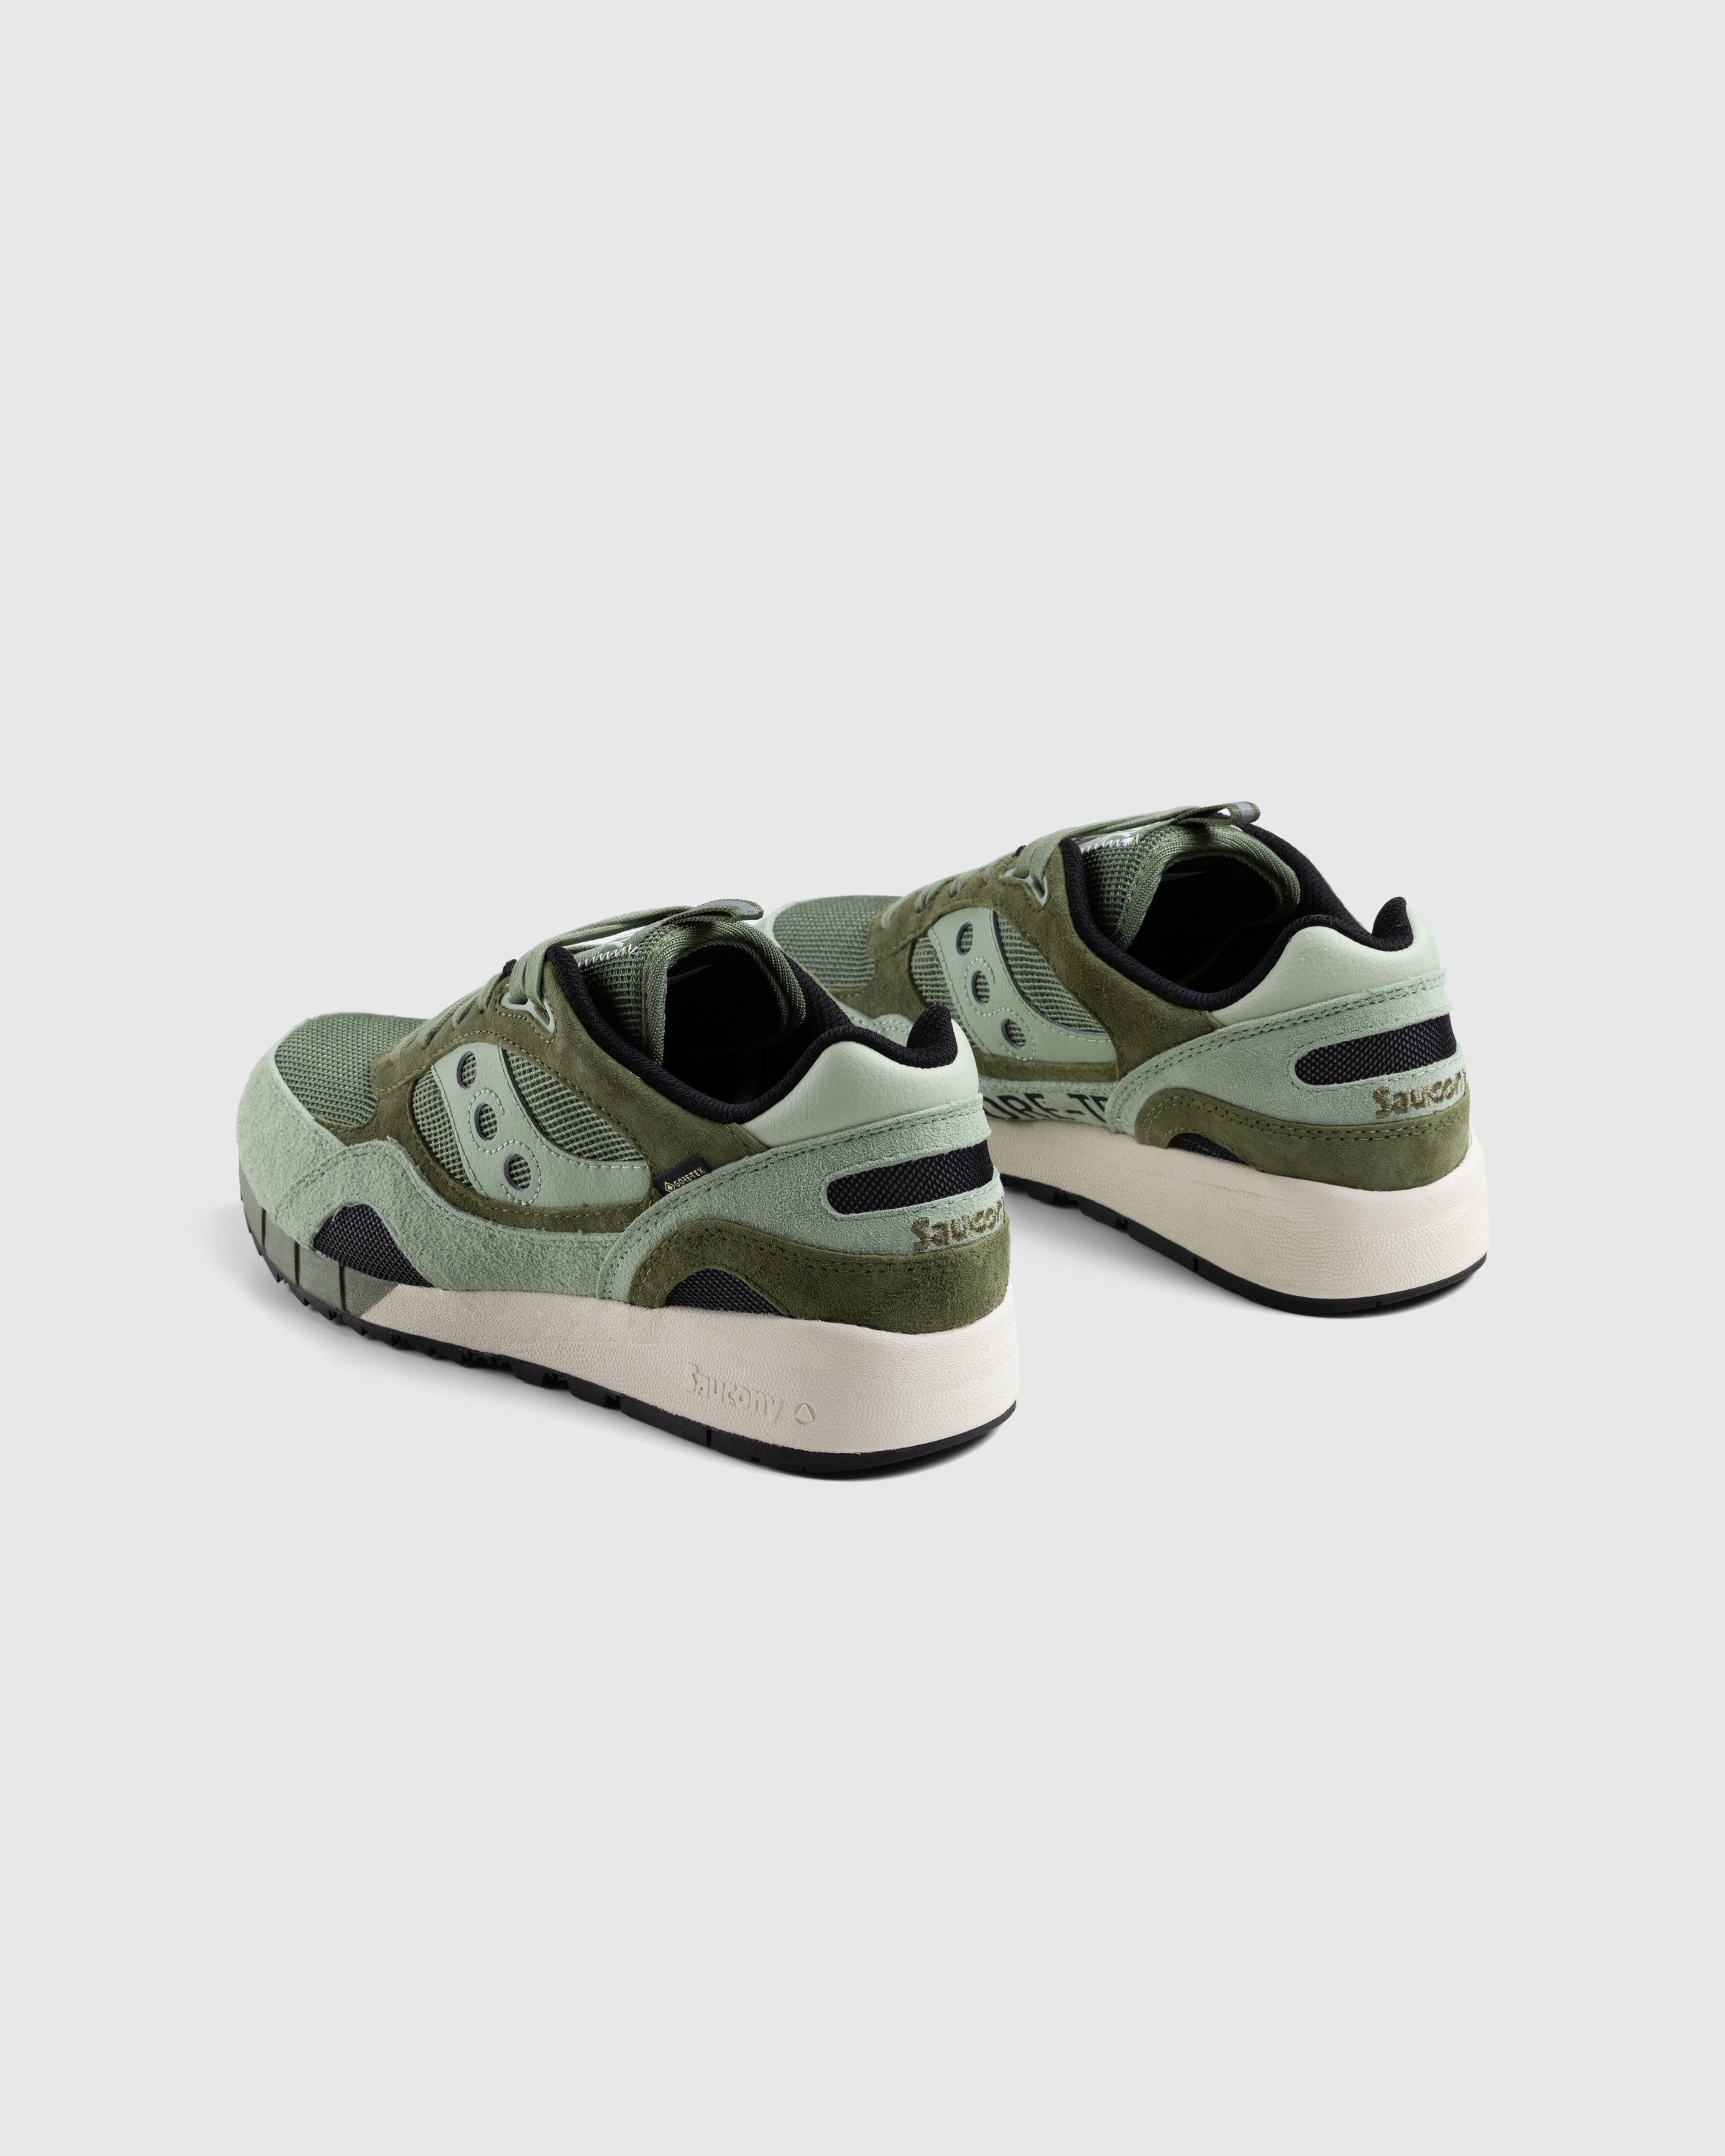 Saucony - Shadow 6000 GTX Green - Footwear - Green - Image 4